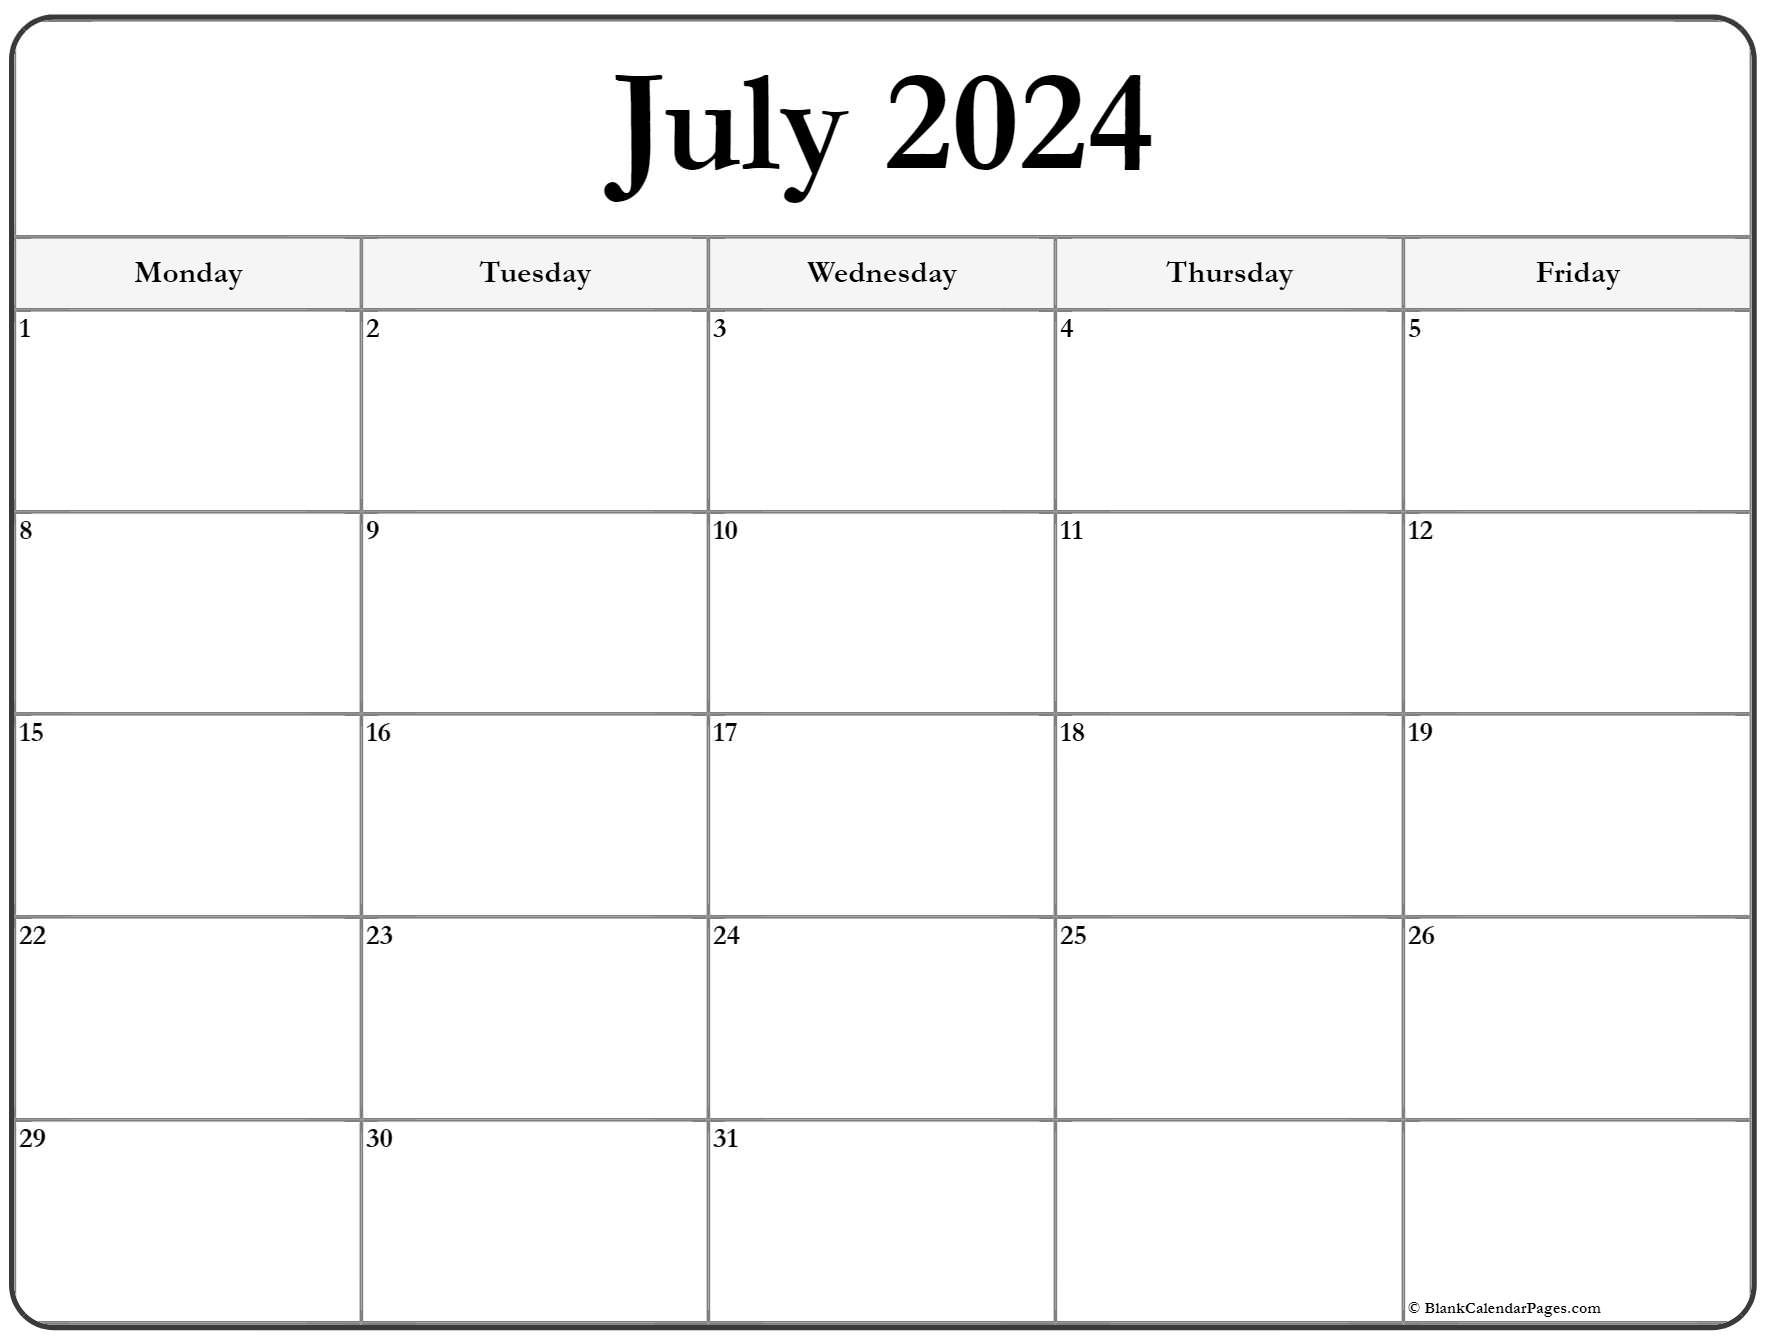 July 2023 Monday Calendar | Monday to Sunday